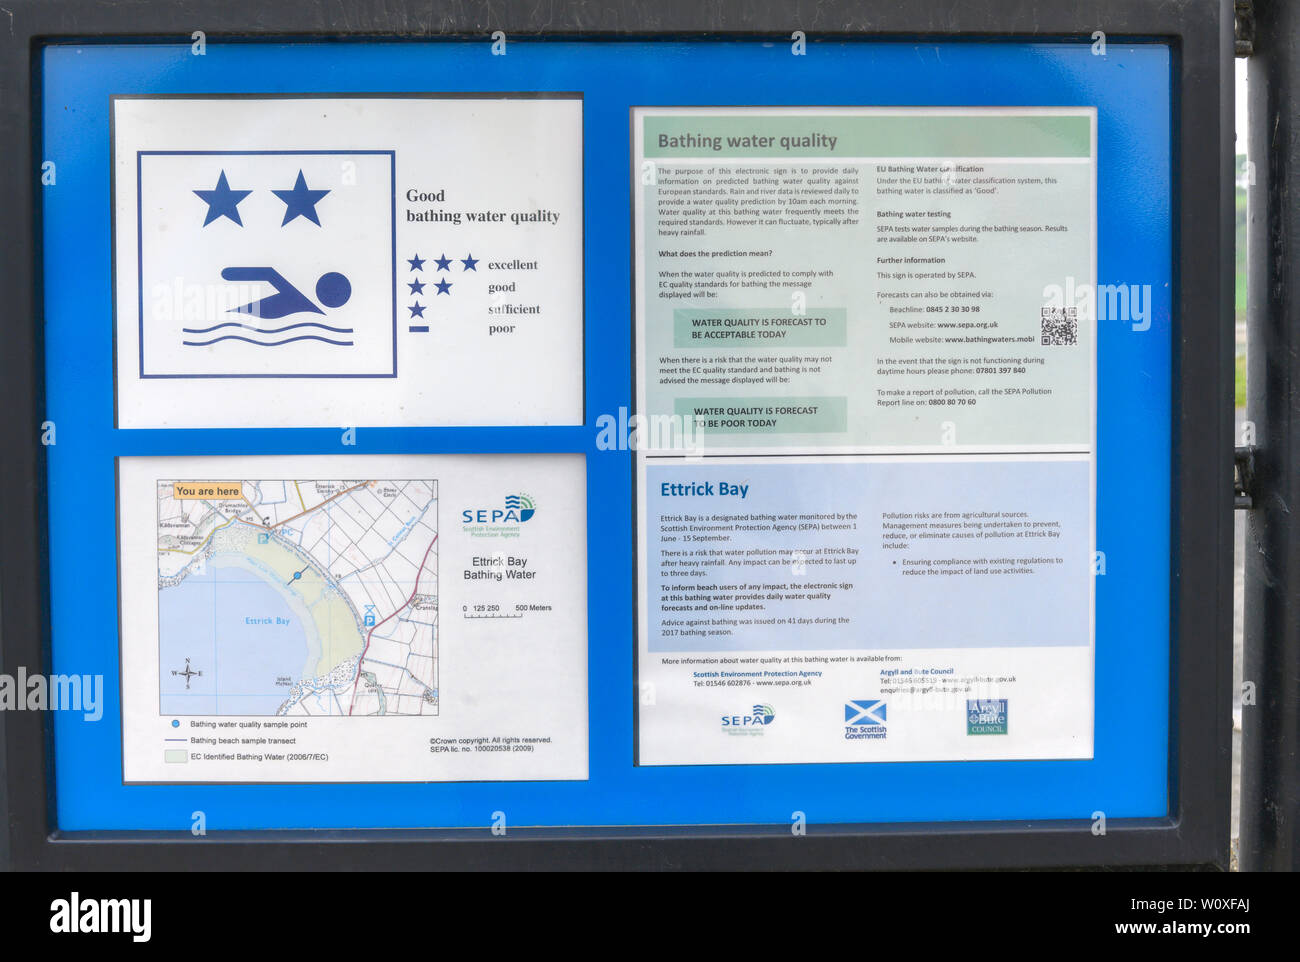 Informations Inscription à Ettrick Bay, île de Bute, Ecosse, sur la qualité des eaux de baignade. Banque D'Images